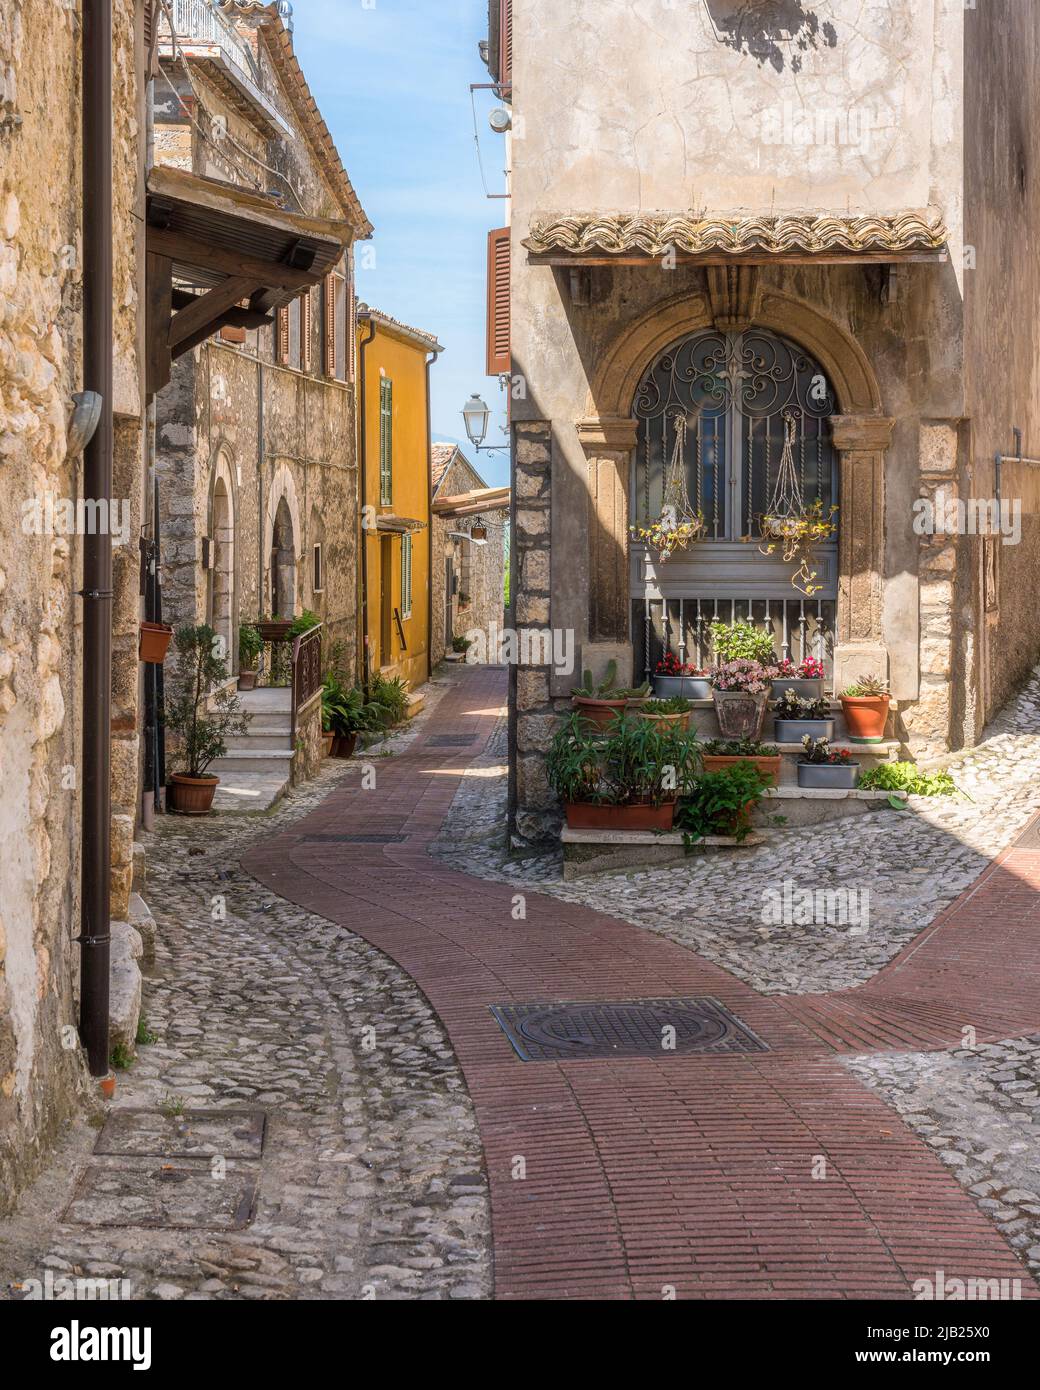 El hermoso pueblo de Veroli, cerca de Frosinone, Lazio, centro de Italia. Foto de stock